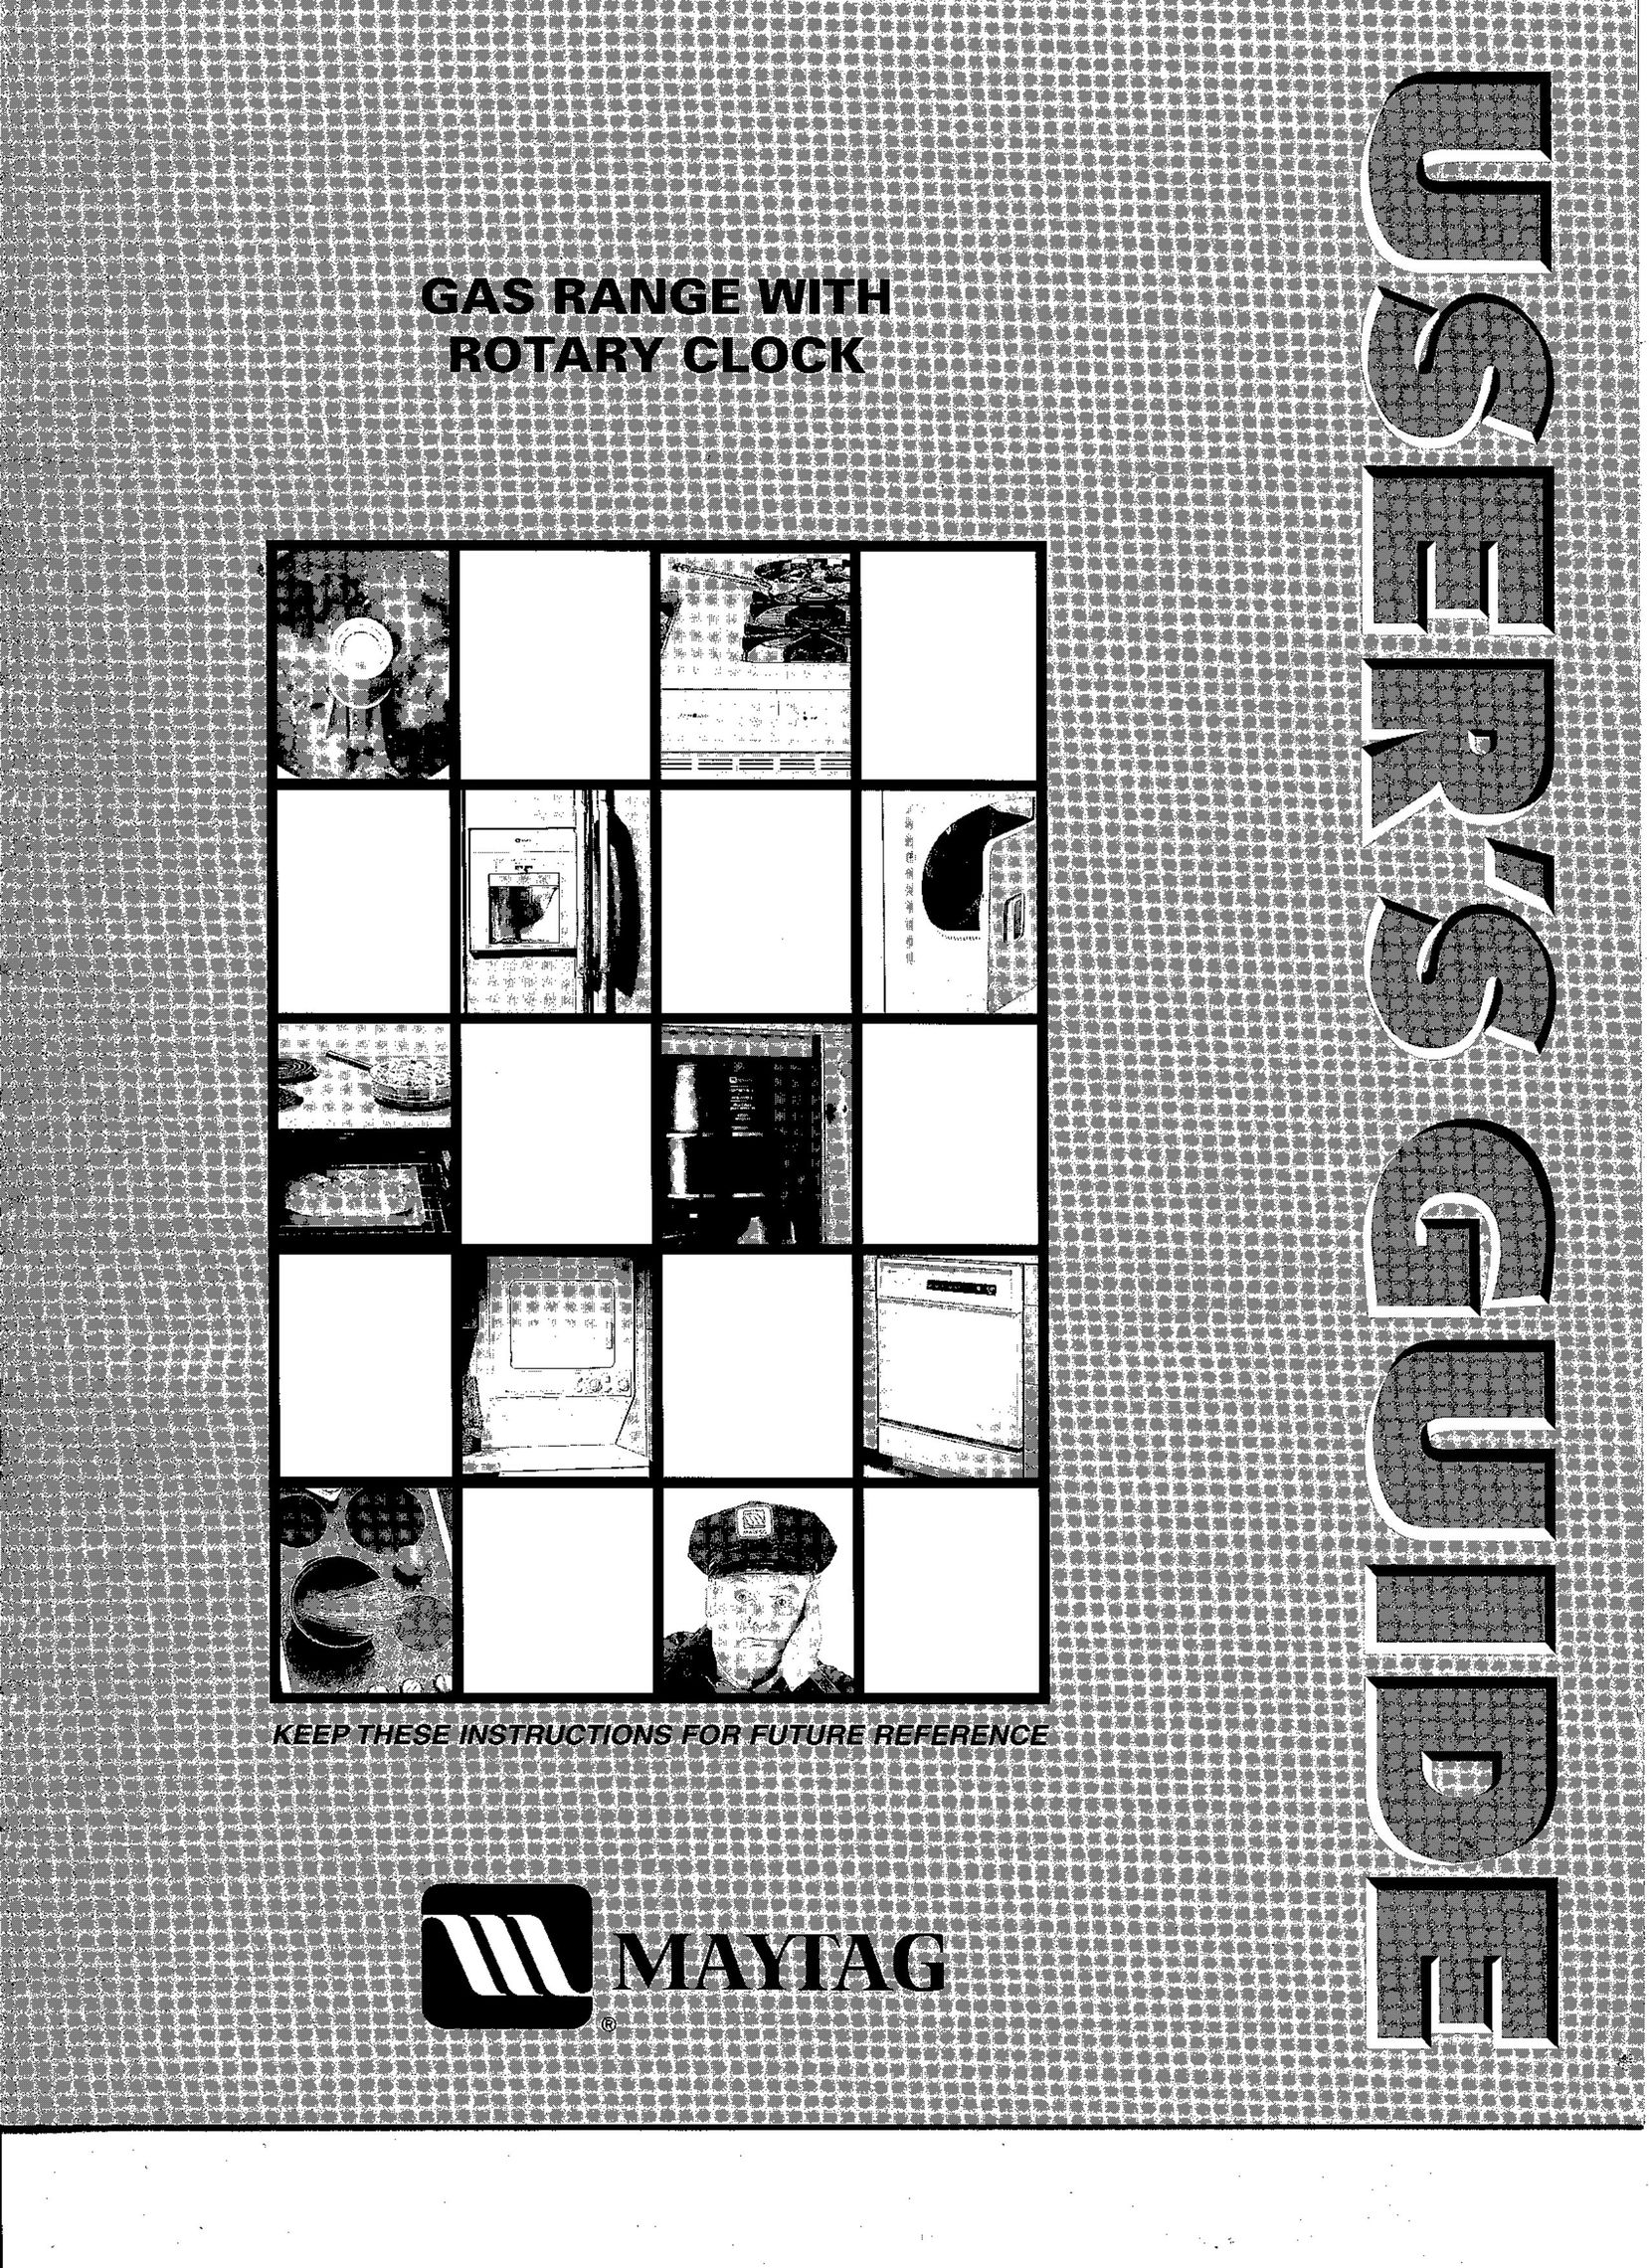 Maytag OL-1246-01 Stove User Manual